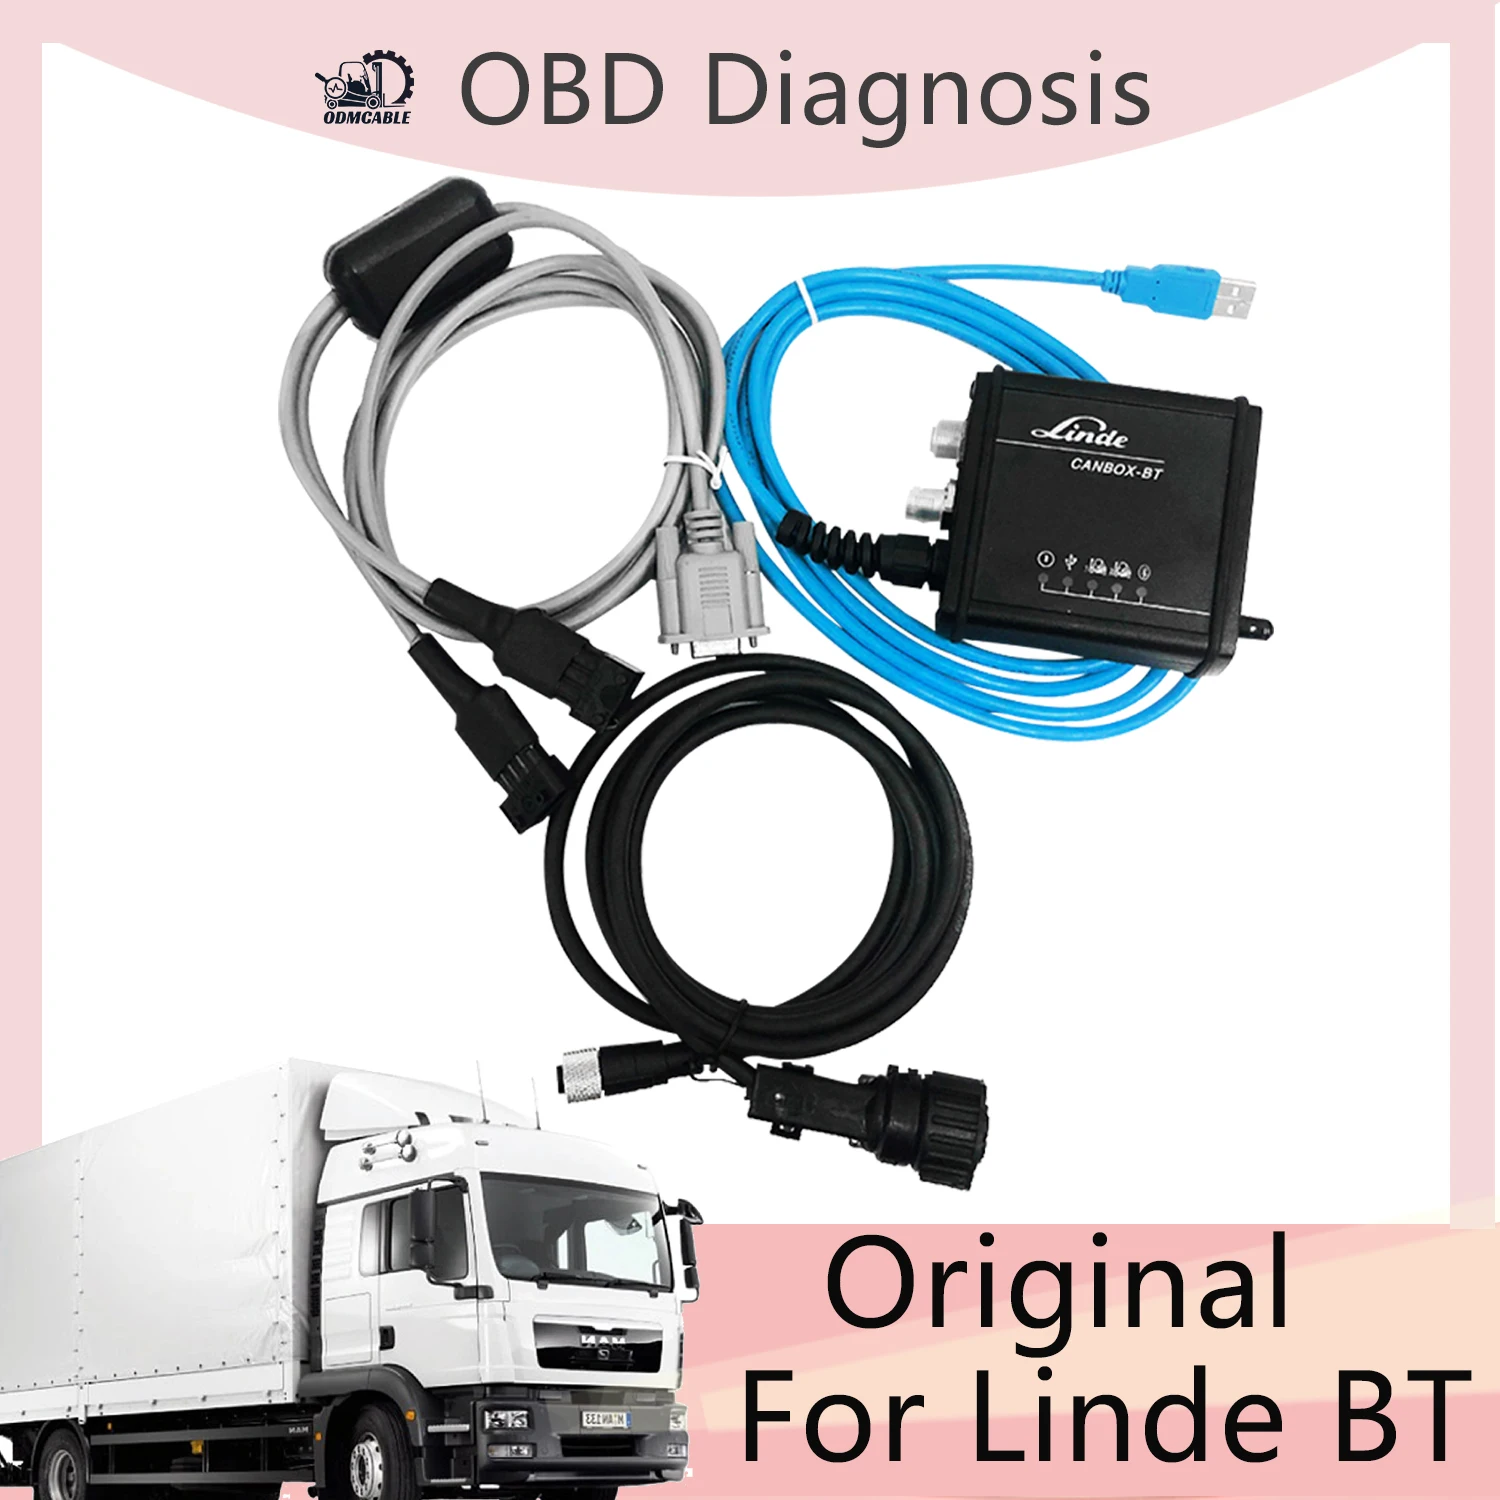 

Diagnosis For Linde Pathfinder Linde Canbox Bt Truck Doctor Diagnostic Lsg Forklift Adapter Service Box Truck Scanner Tool